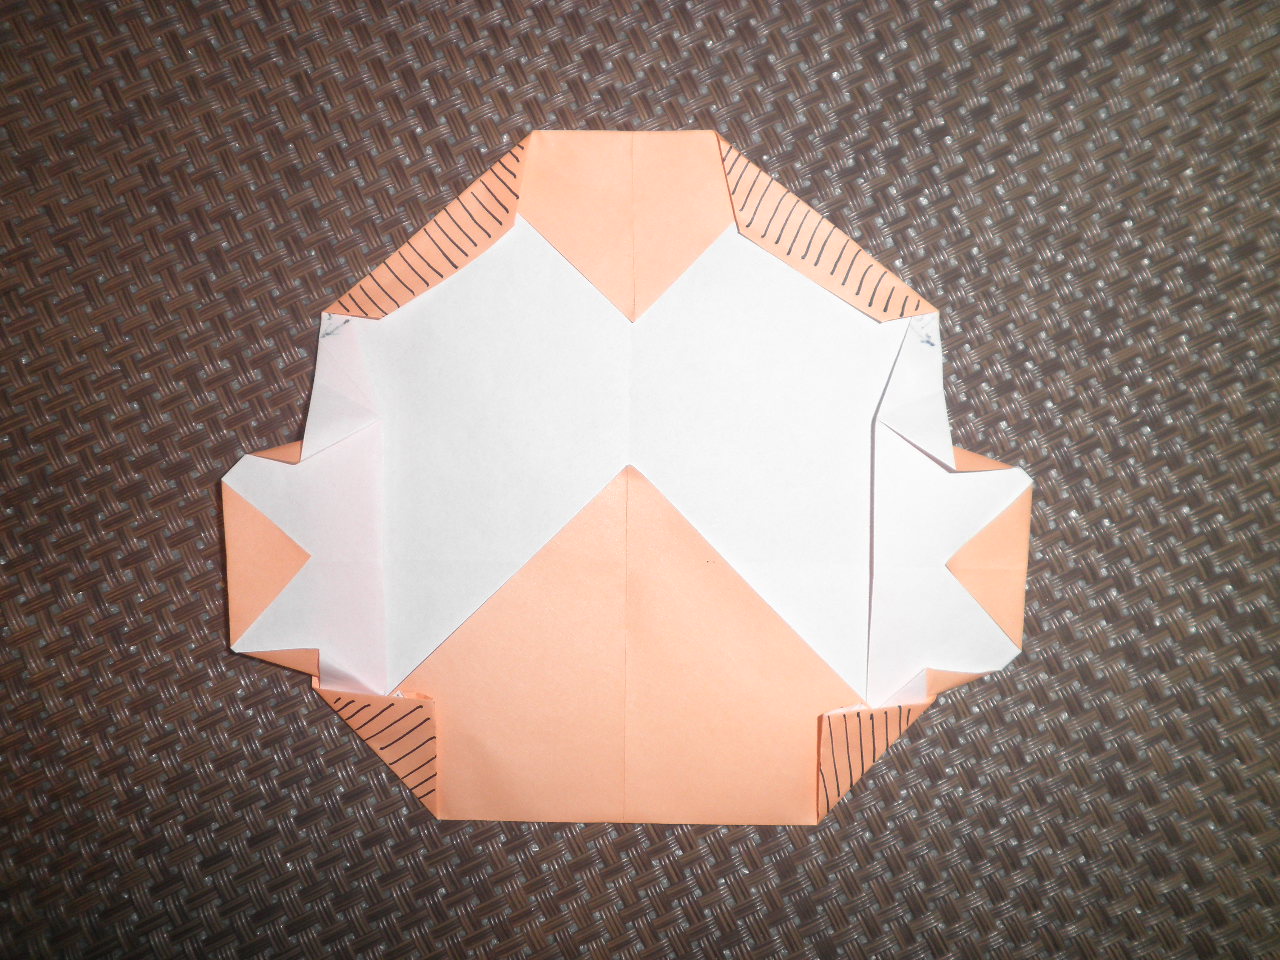 チャーリーブラウンの作り方 折り紙作家 自称 あみごりの折り紙ルーム